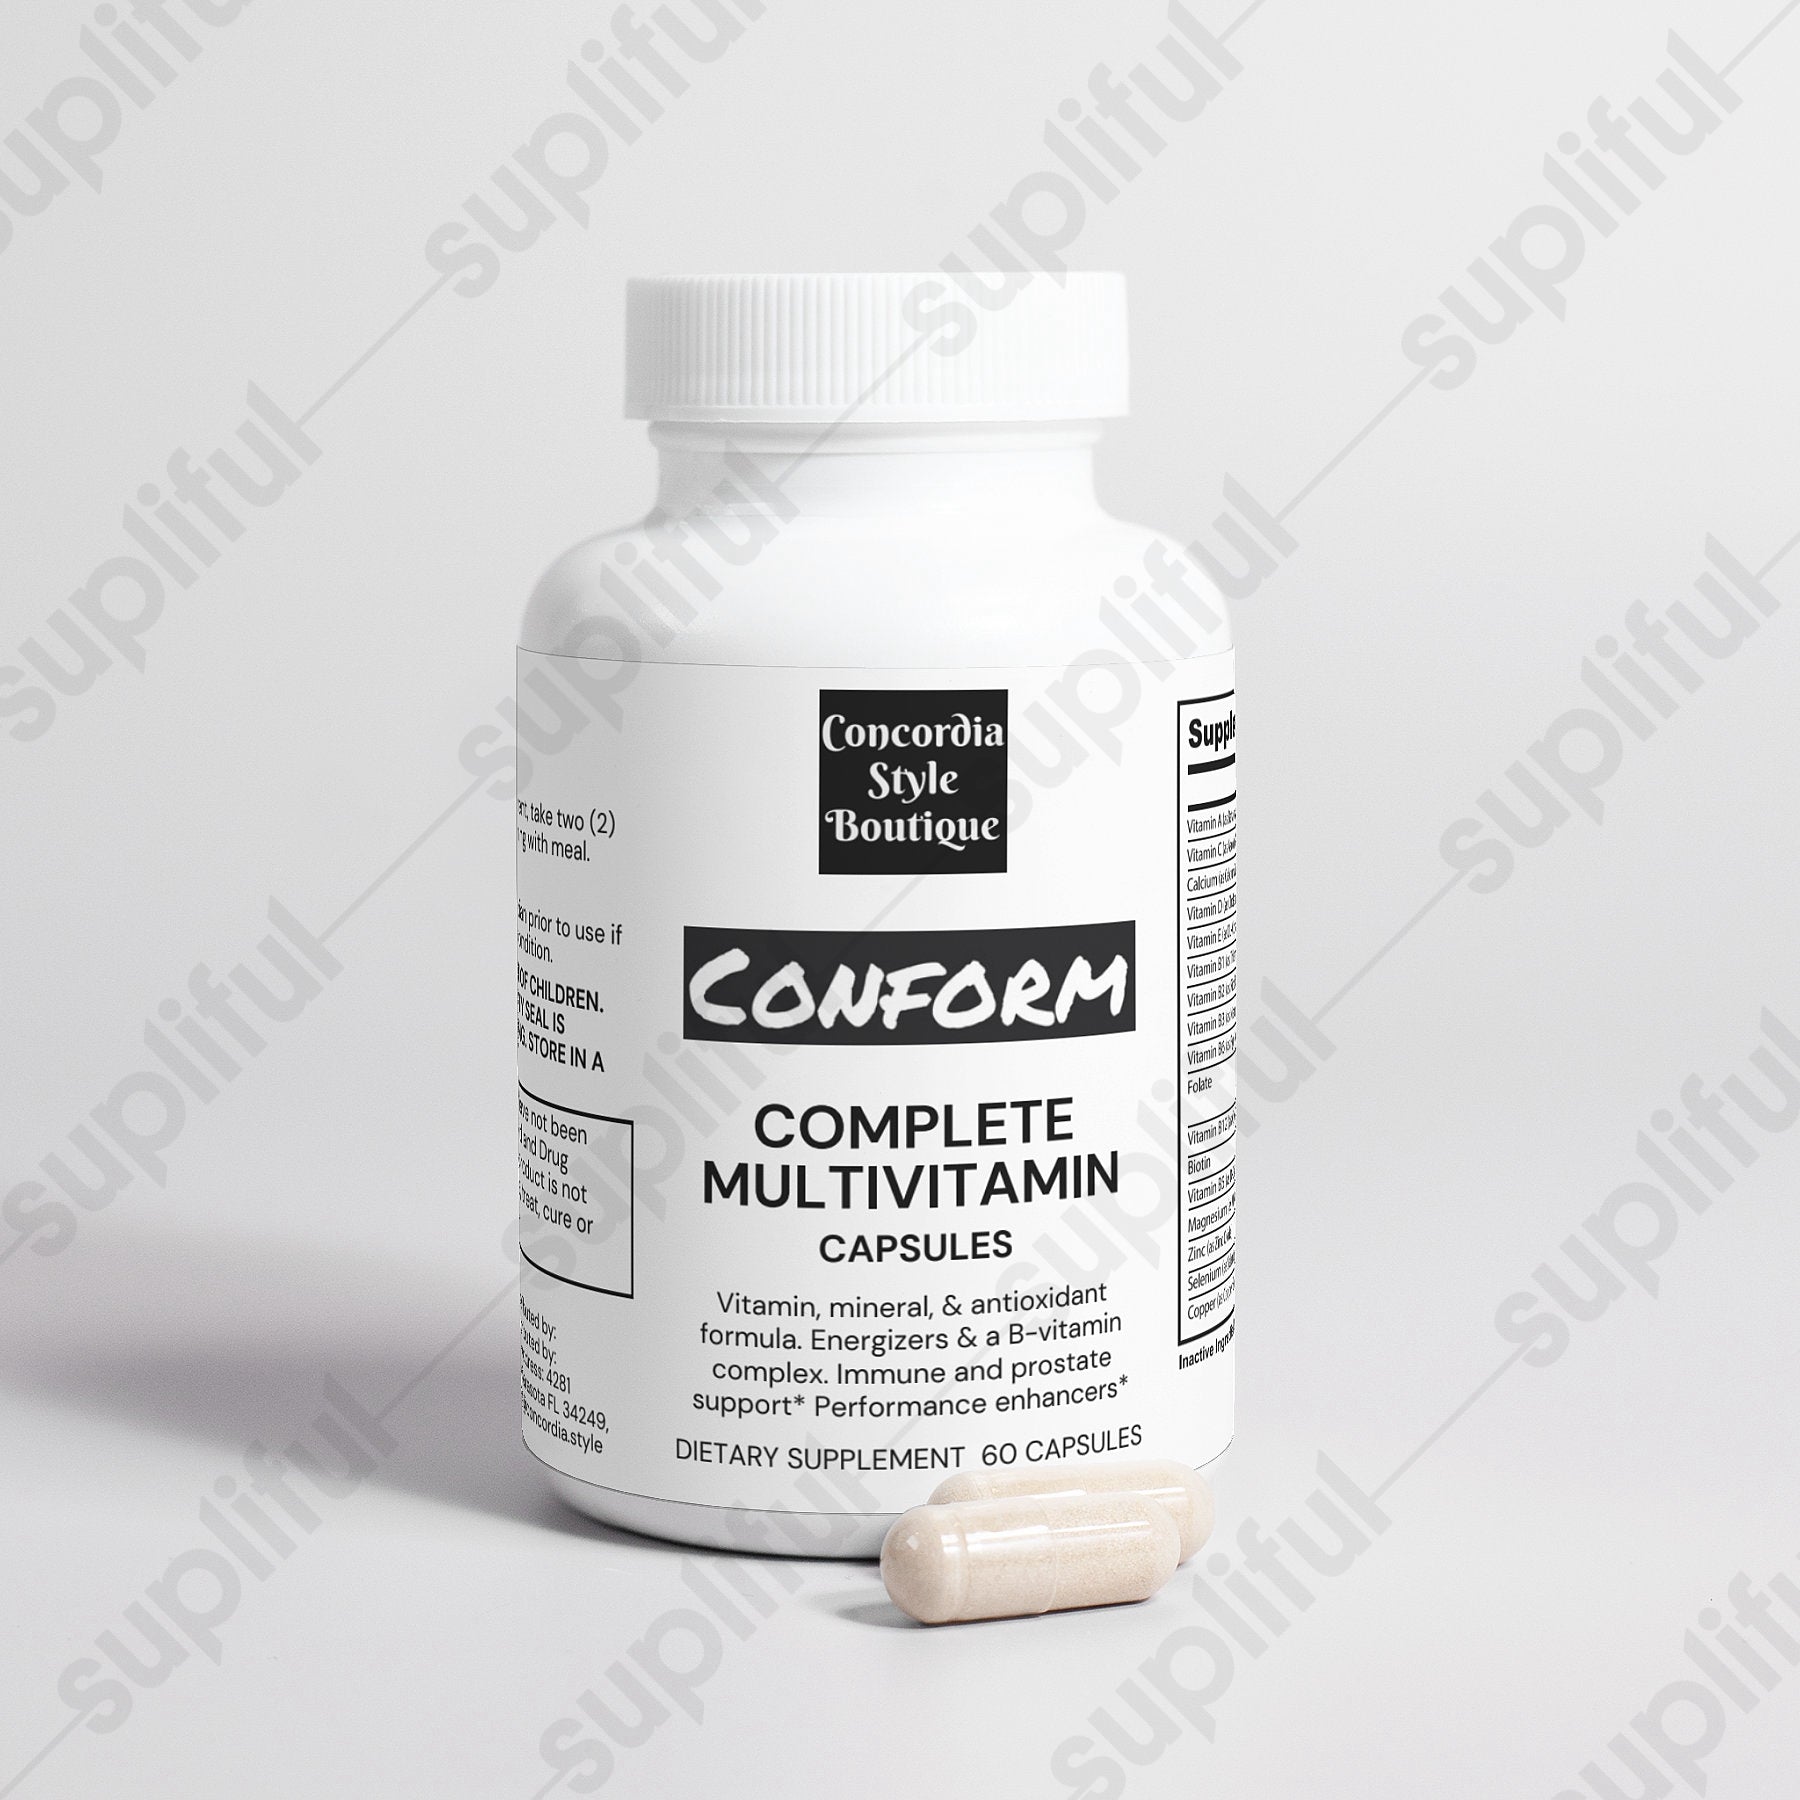 Complete Multivitamin - Conform - Premium Vitamins & Minerals from Concordia Style Boutique - Just $15.50! Shop now at Concordia Style Boutique